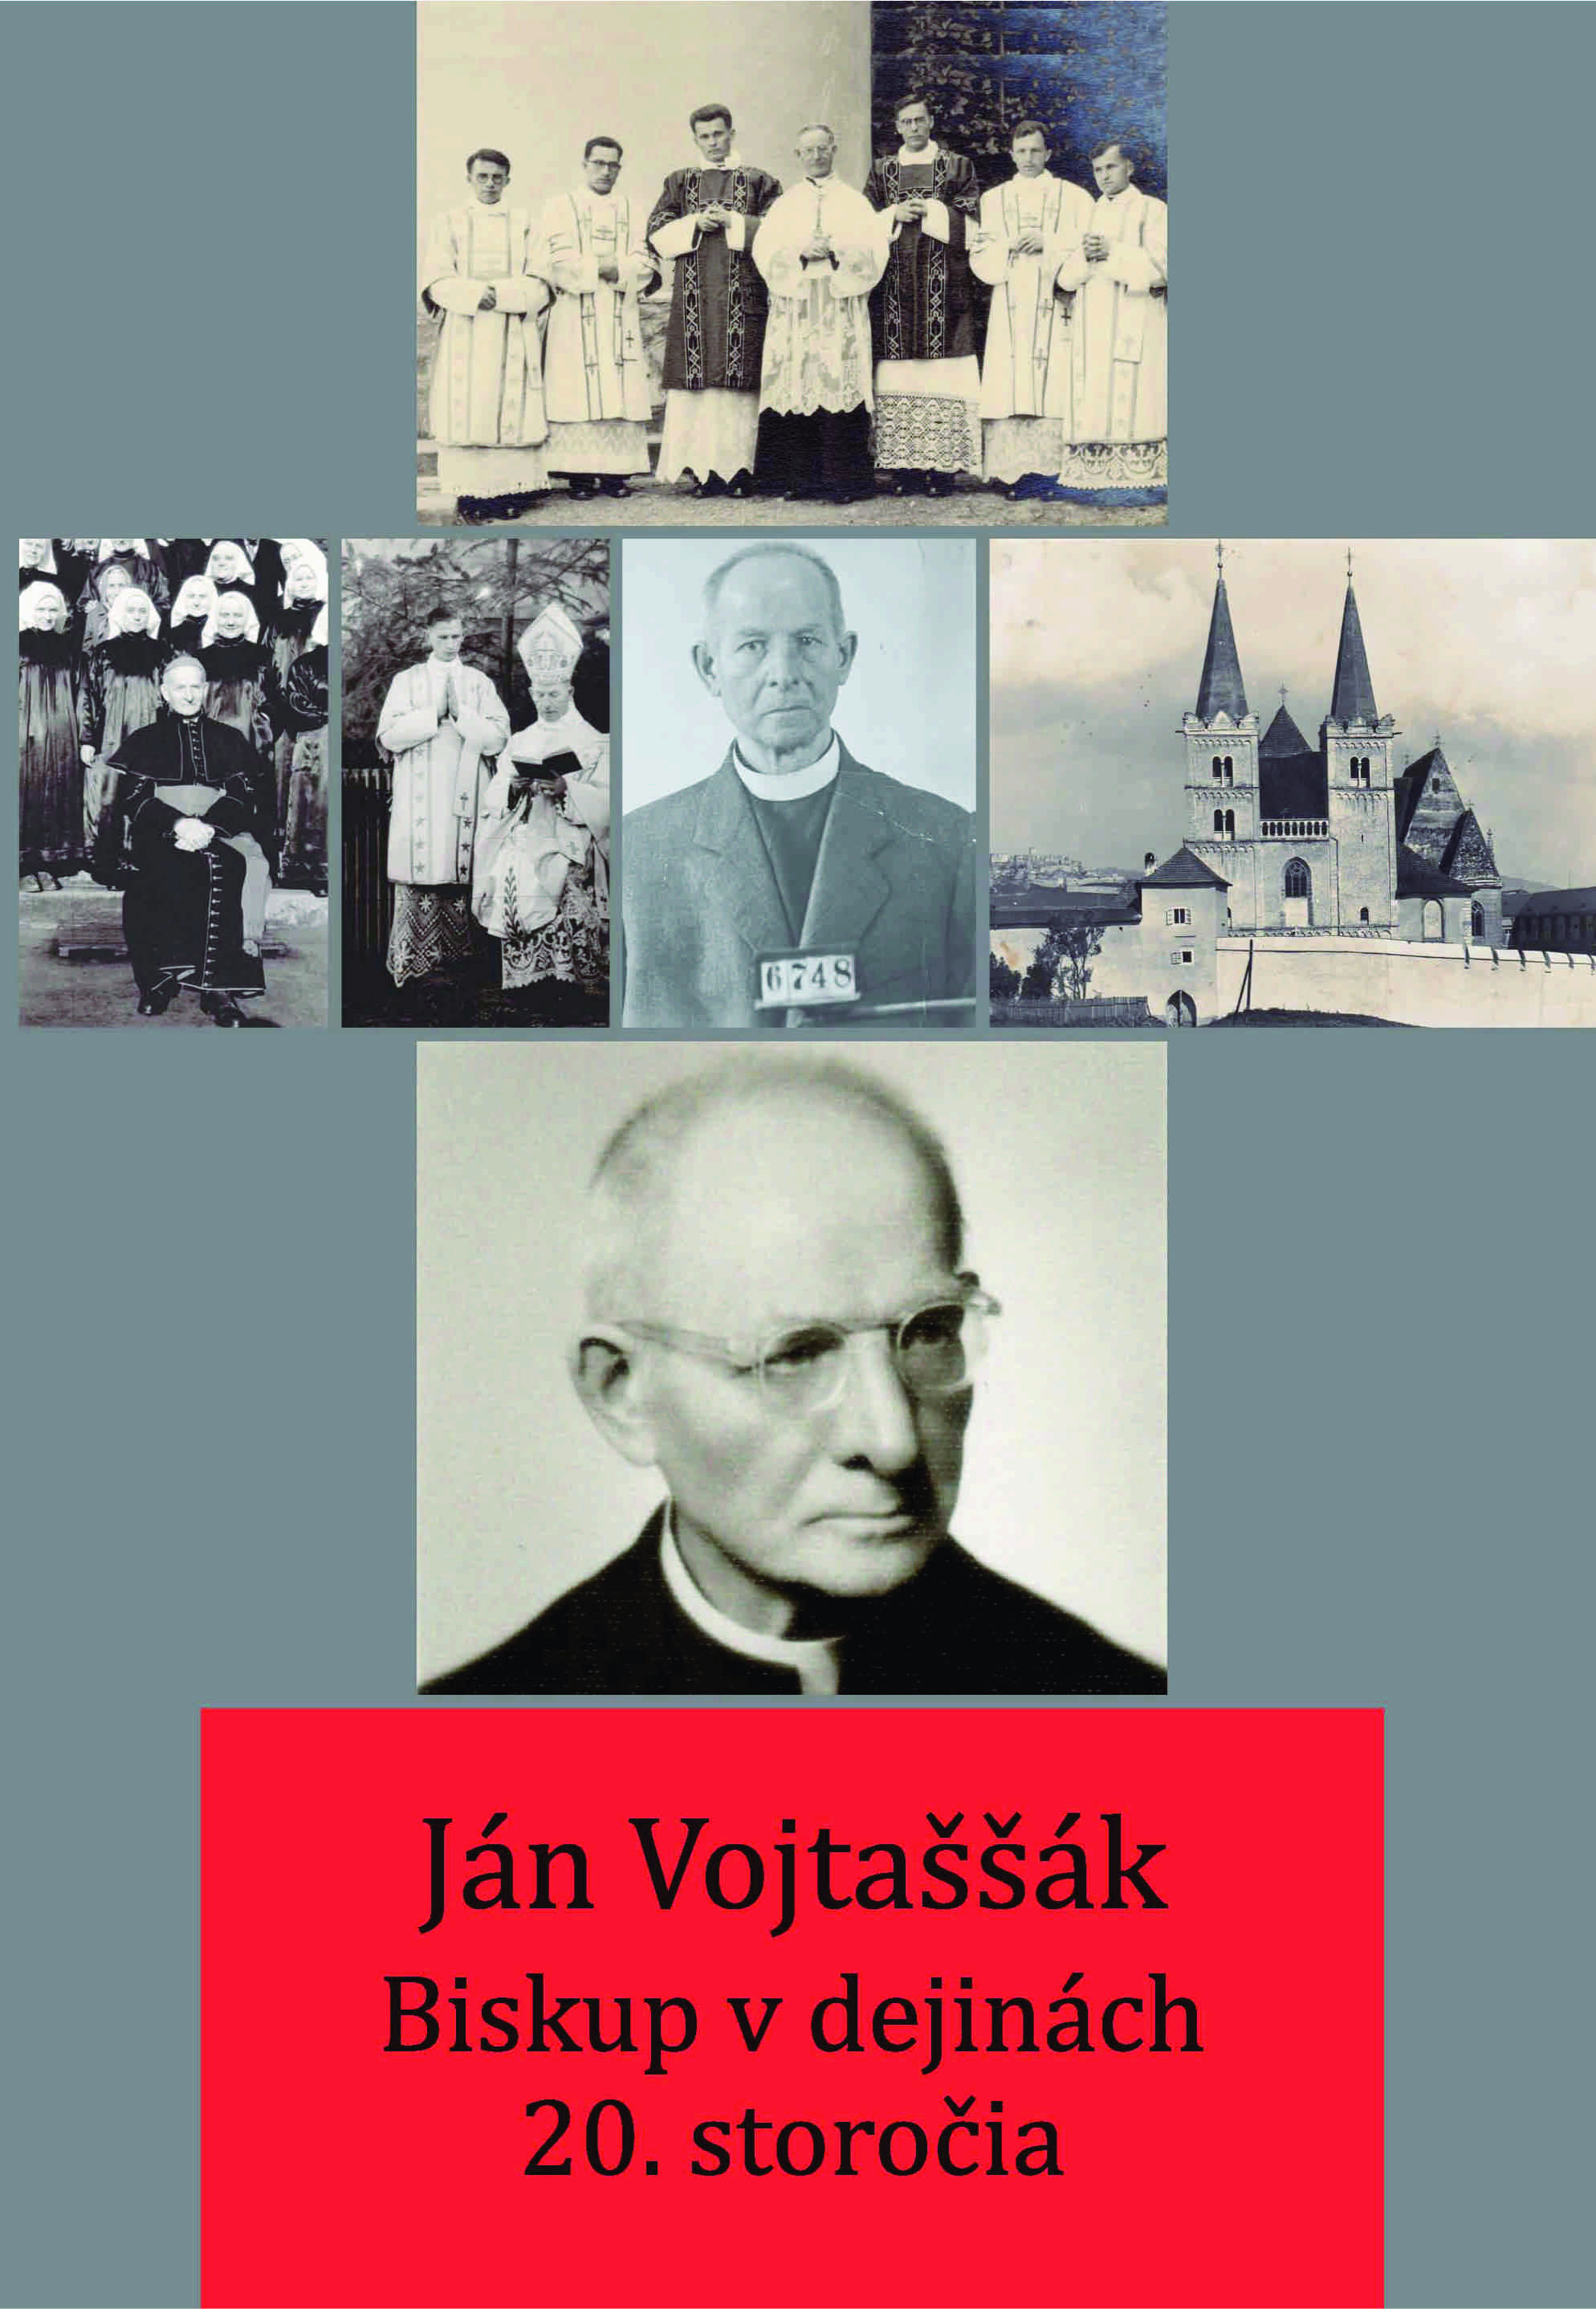 Ján Vojtaššák